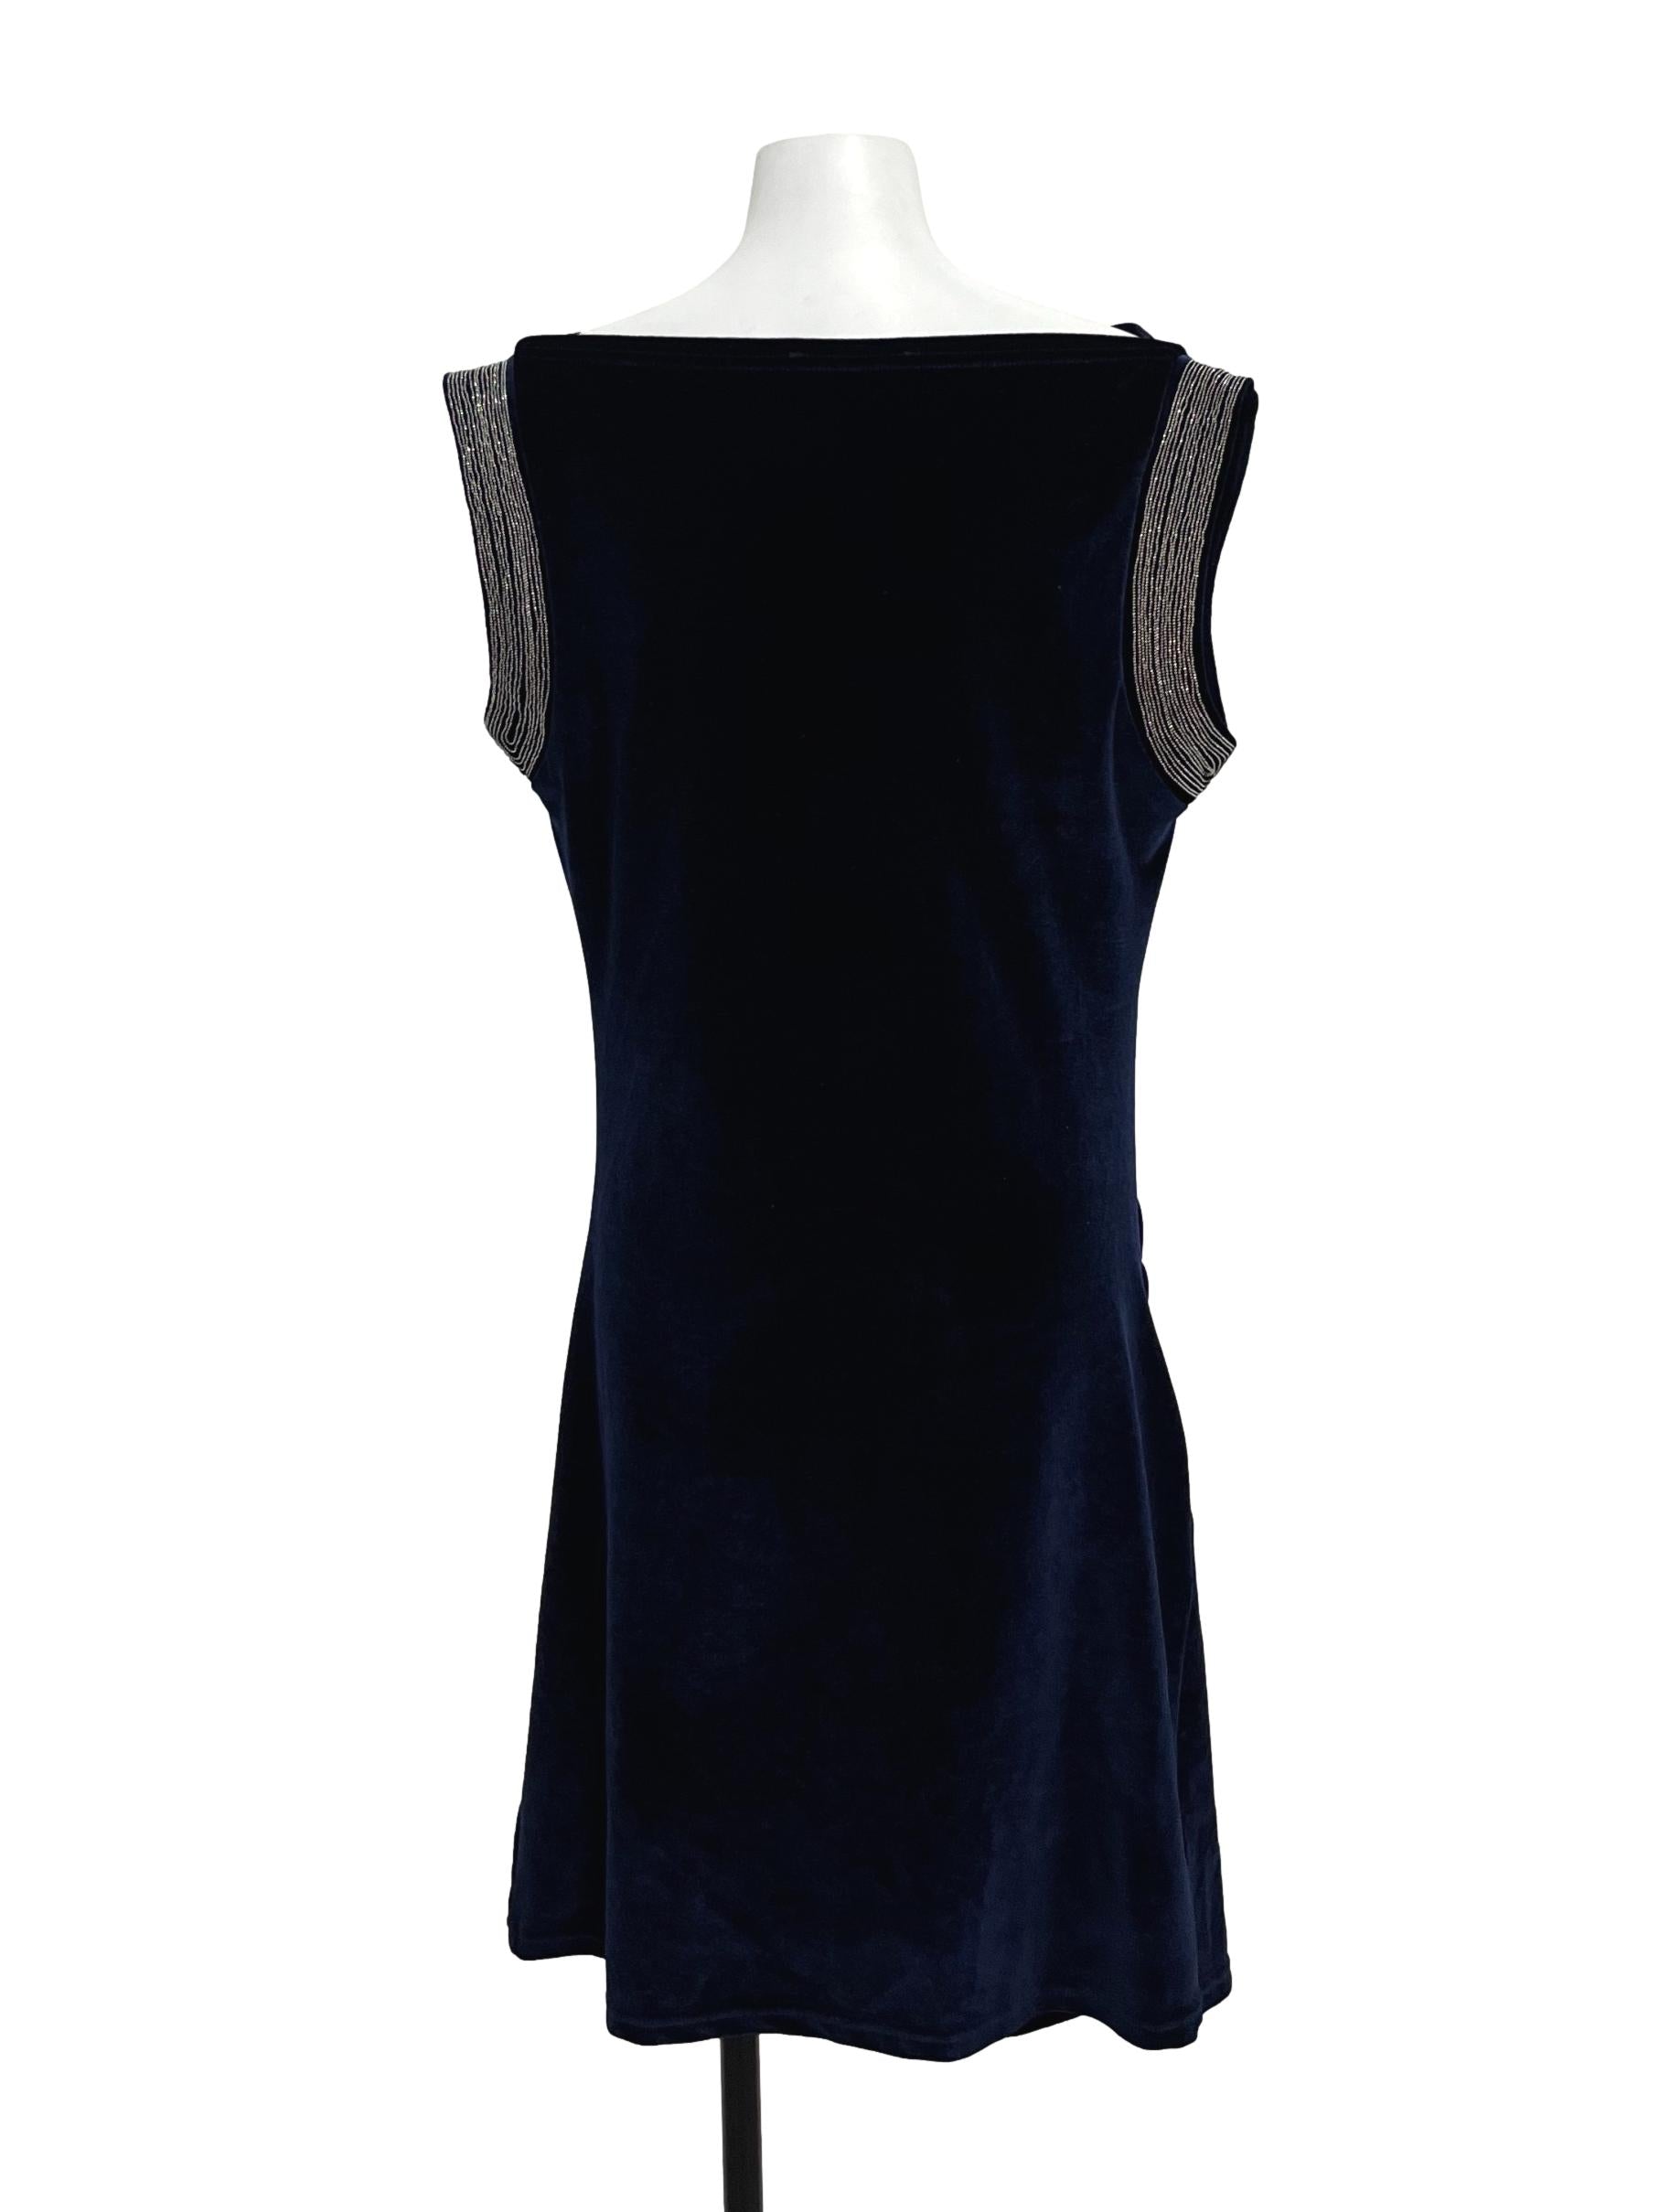 Cobalt Blue Colourblock Dress